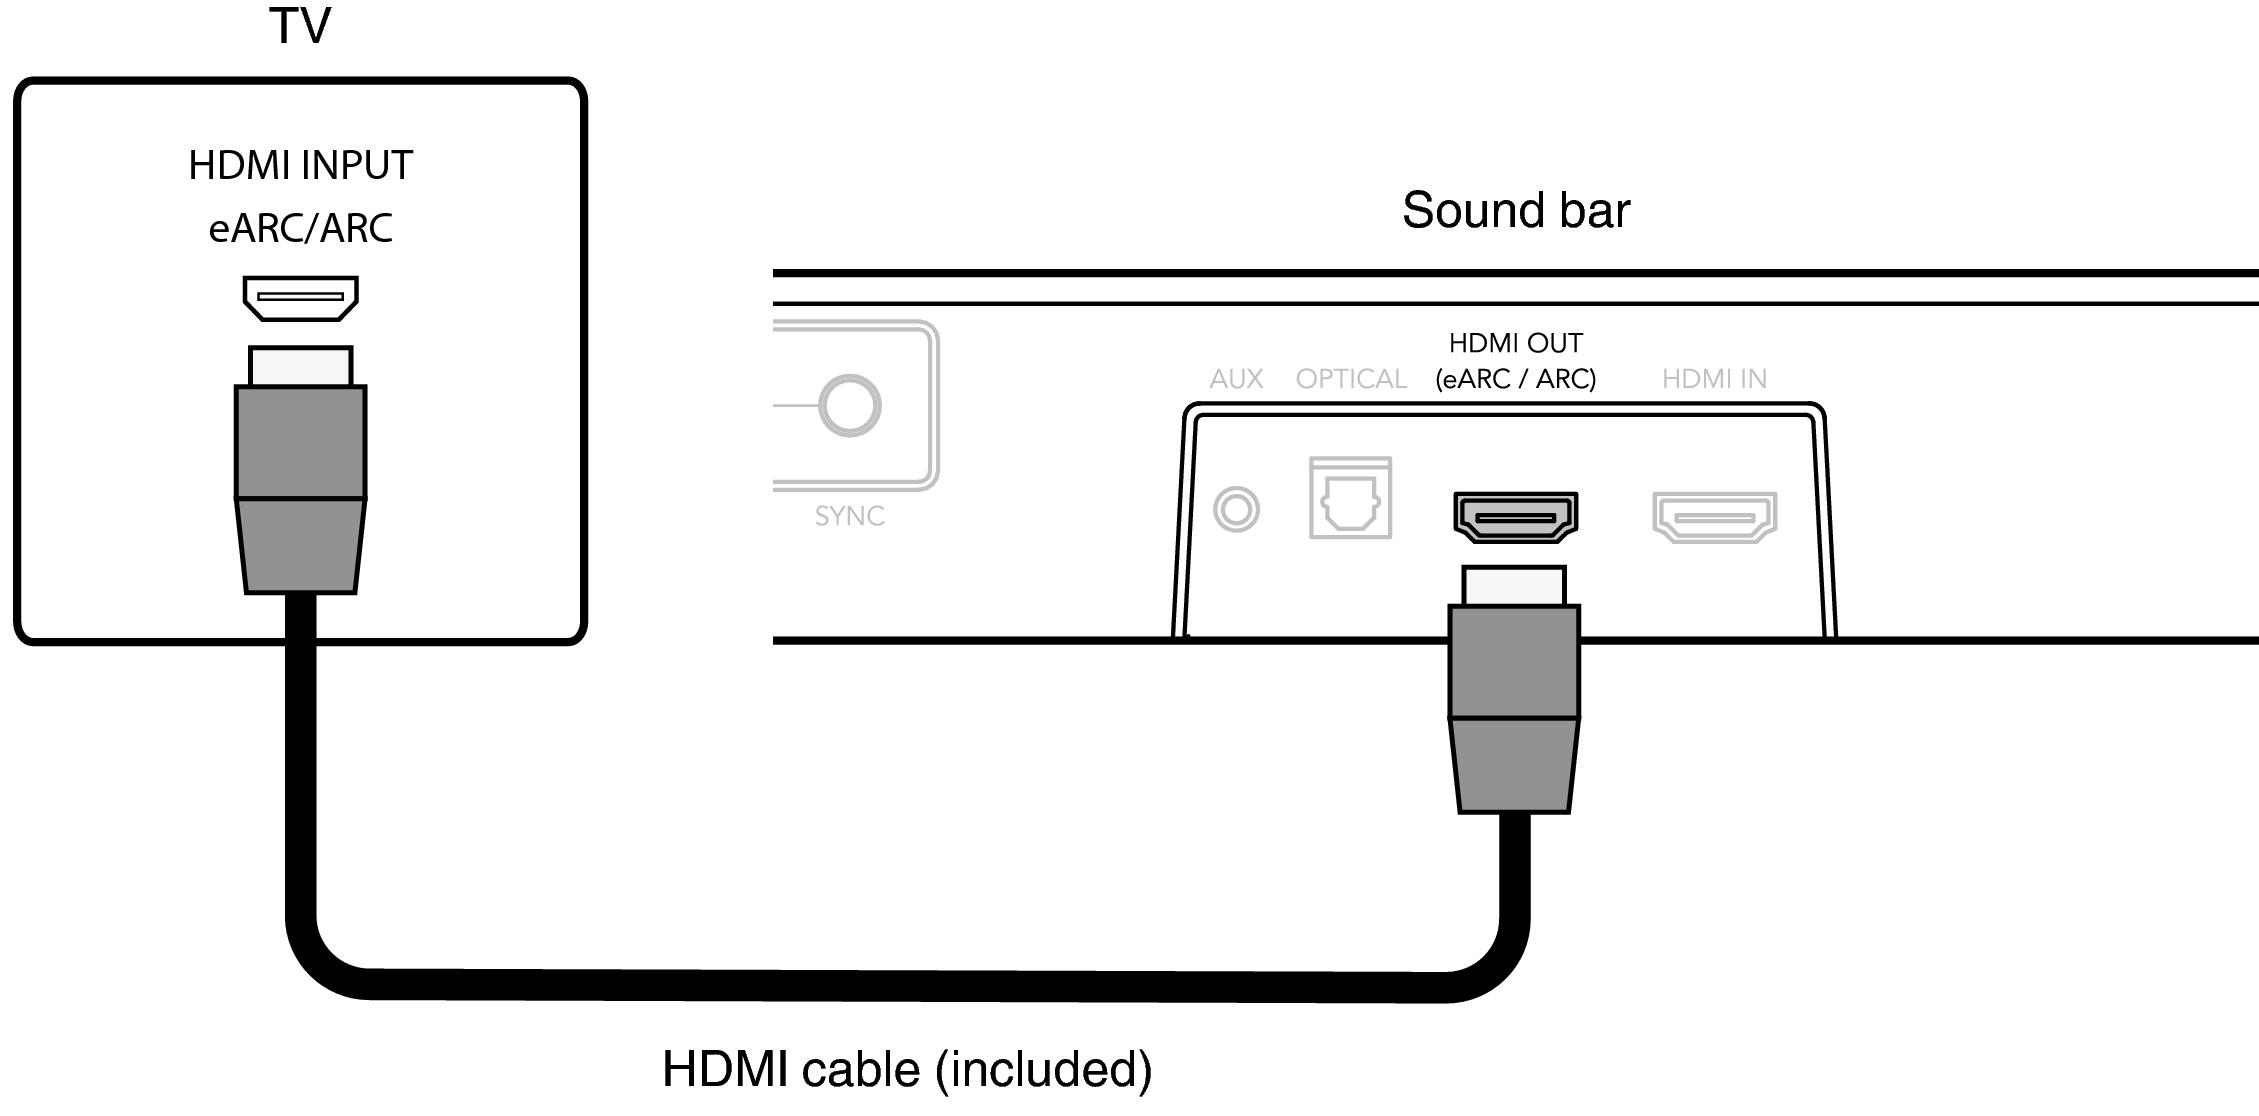 Earc arc. HDMI Arc и EARC. HDMI Arc EARC разница. Технология HDMI Arc - Audio Return channel. HDMI Arc и HDMI разница.